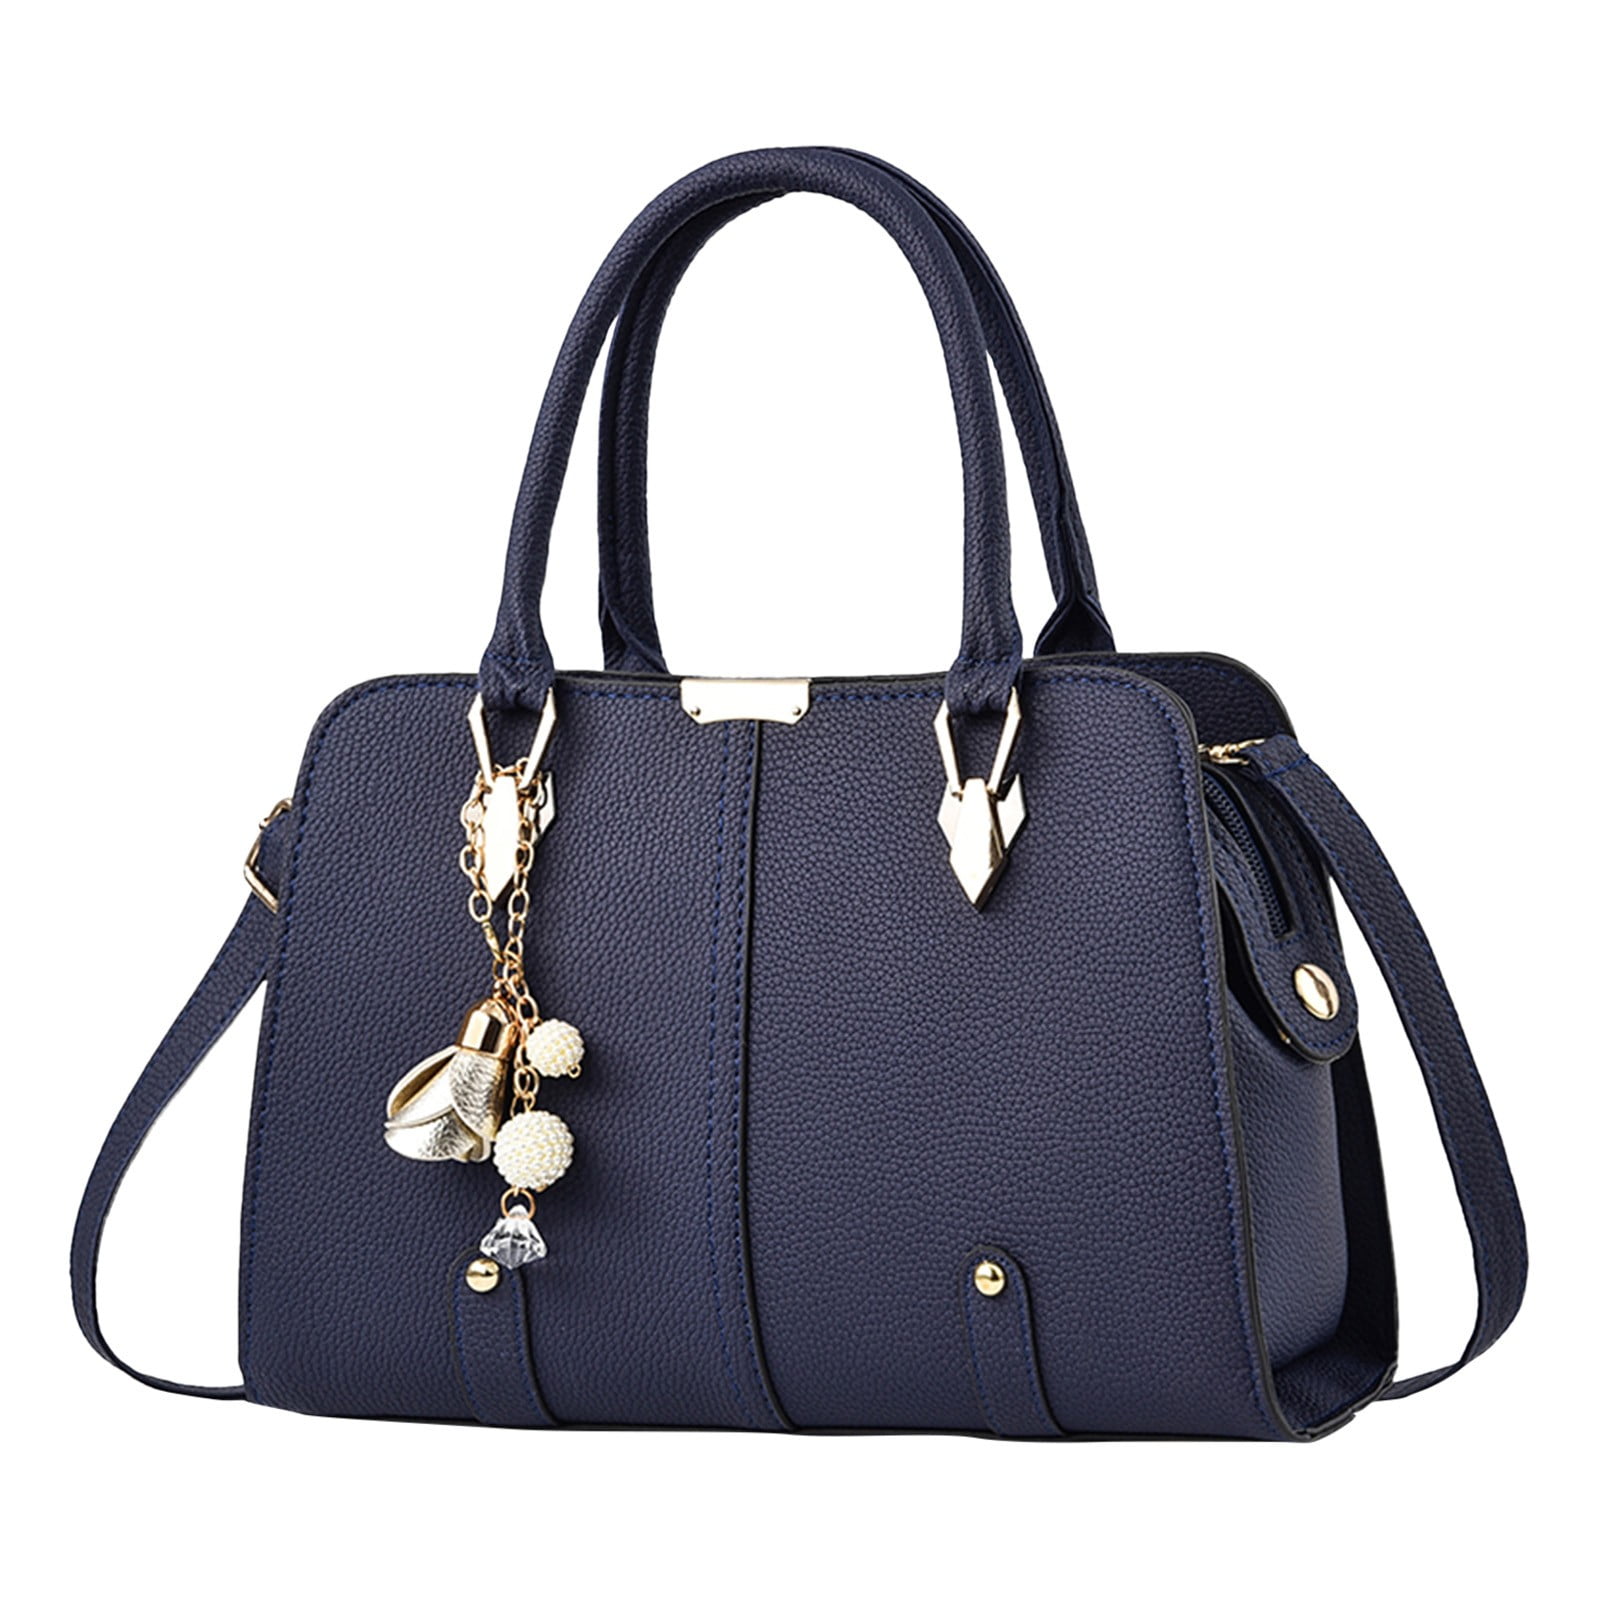 SZXZYGS Women Purses and Handbags Womens Tote Bag Fashion Handbags ...